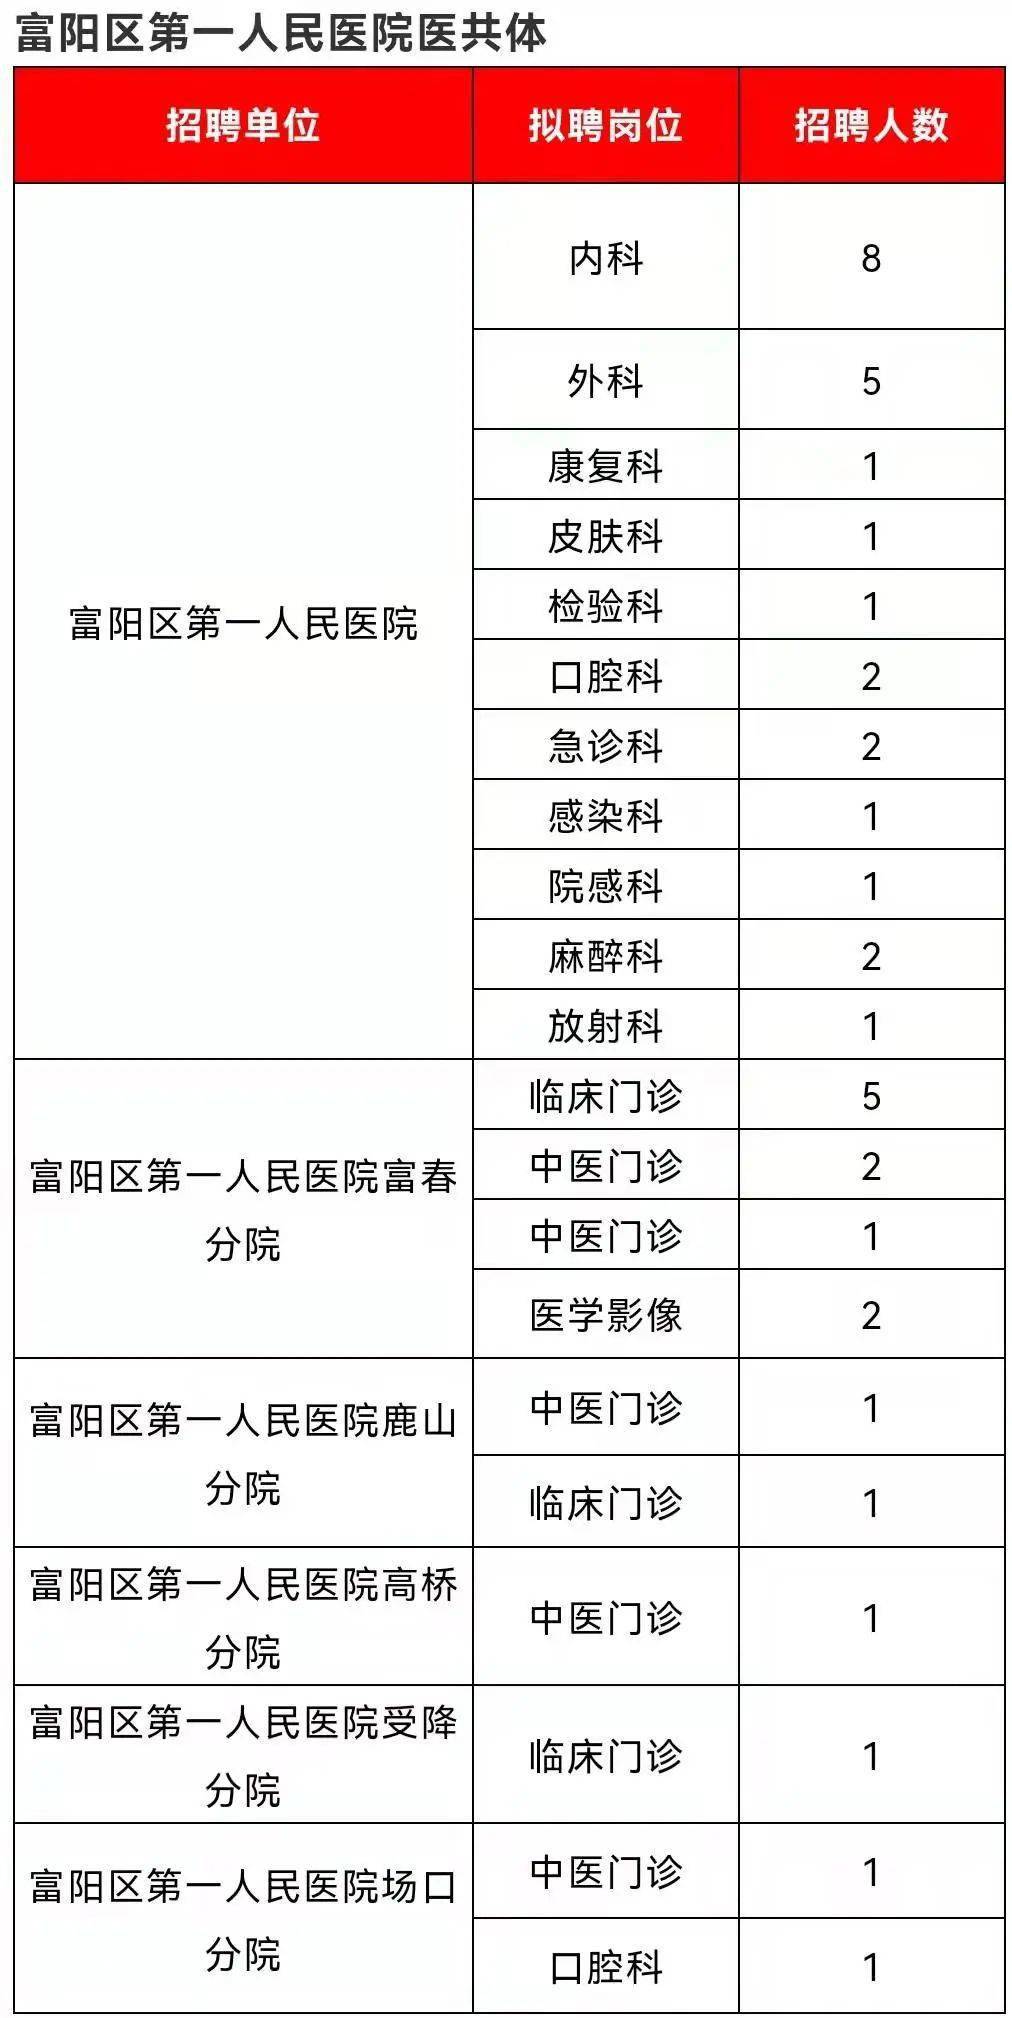 来报名 杭州一批事业单位公开招聘200多人 看看有没有合适的